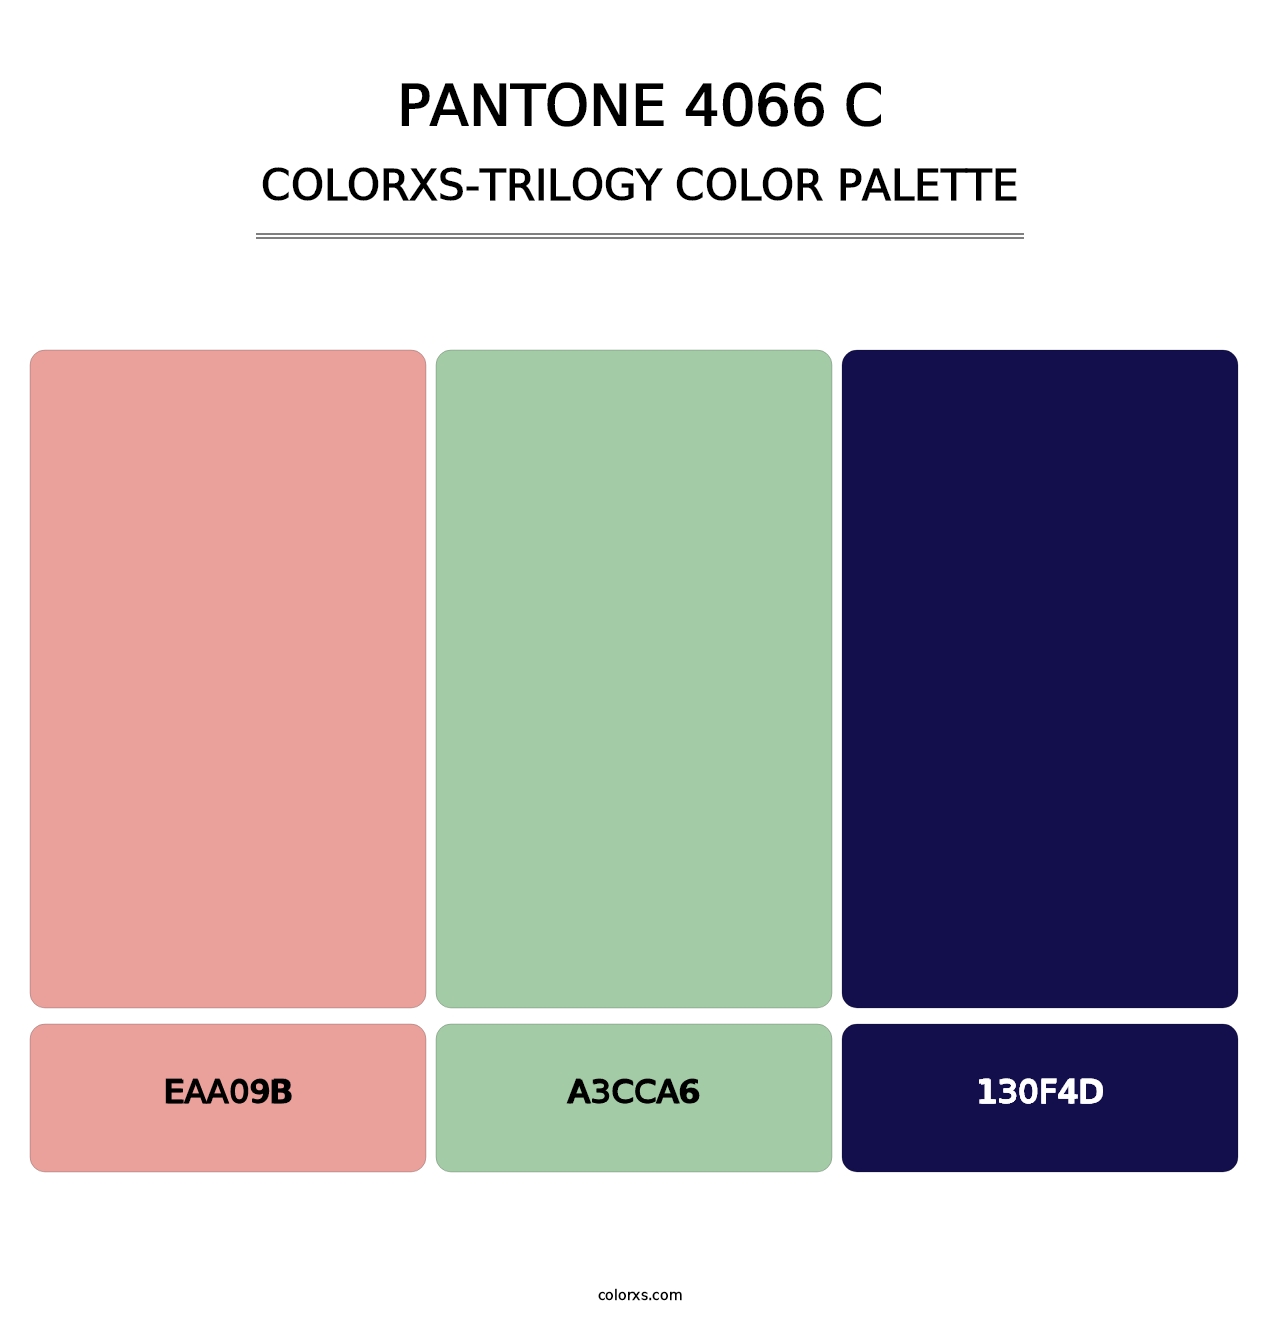 PANTONE 4066 C - Colorxs Trilogy Palette